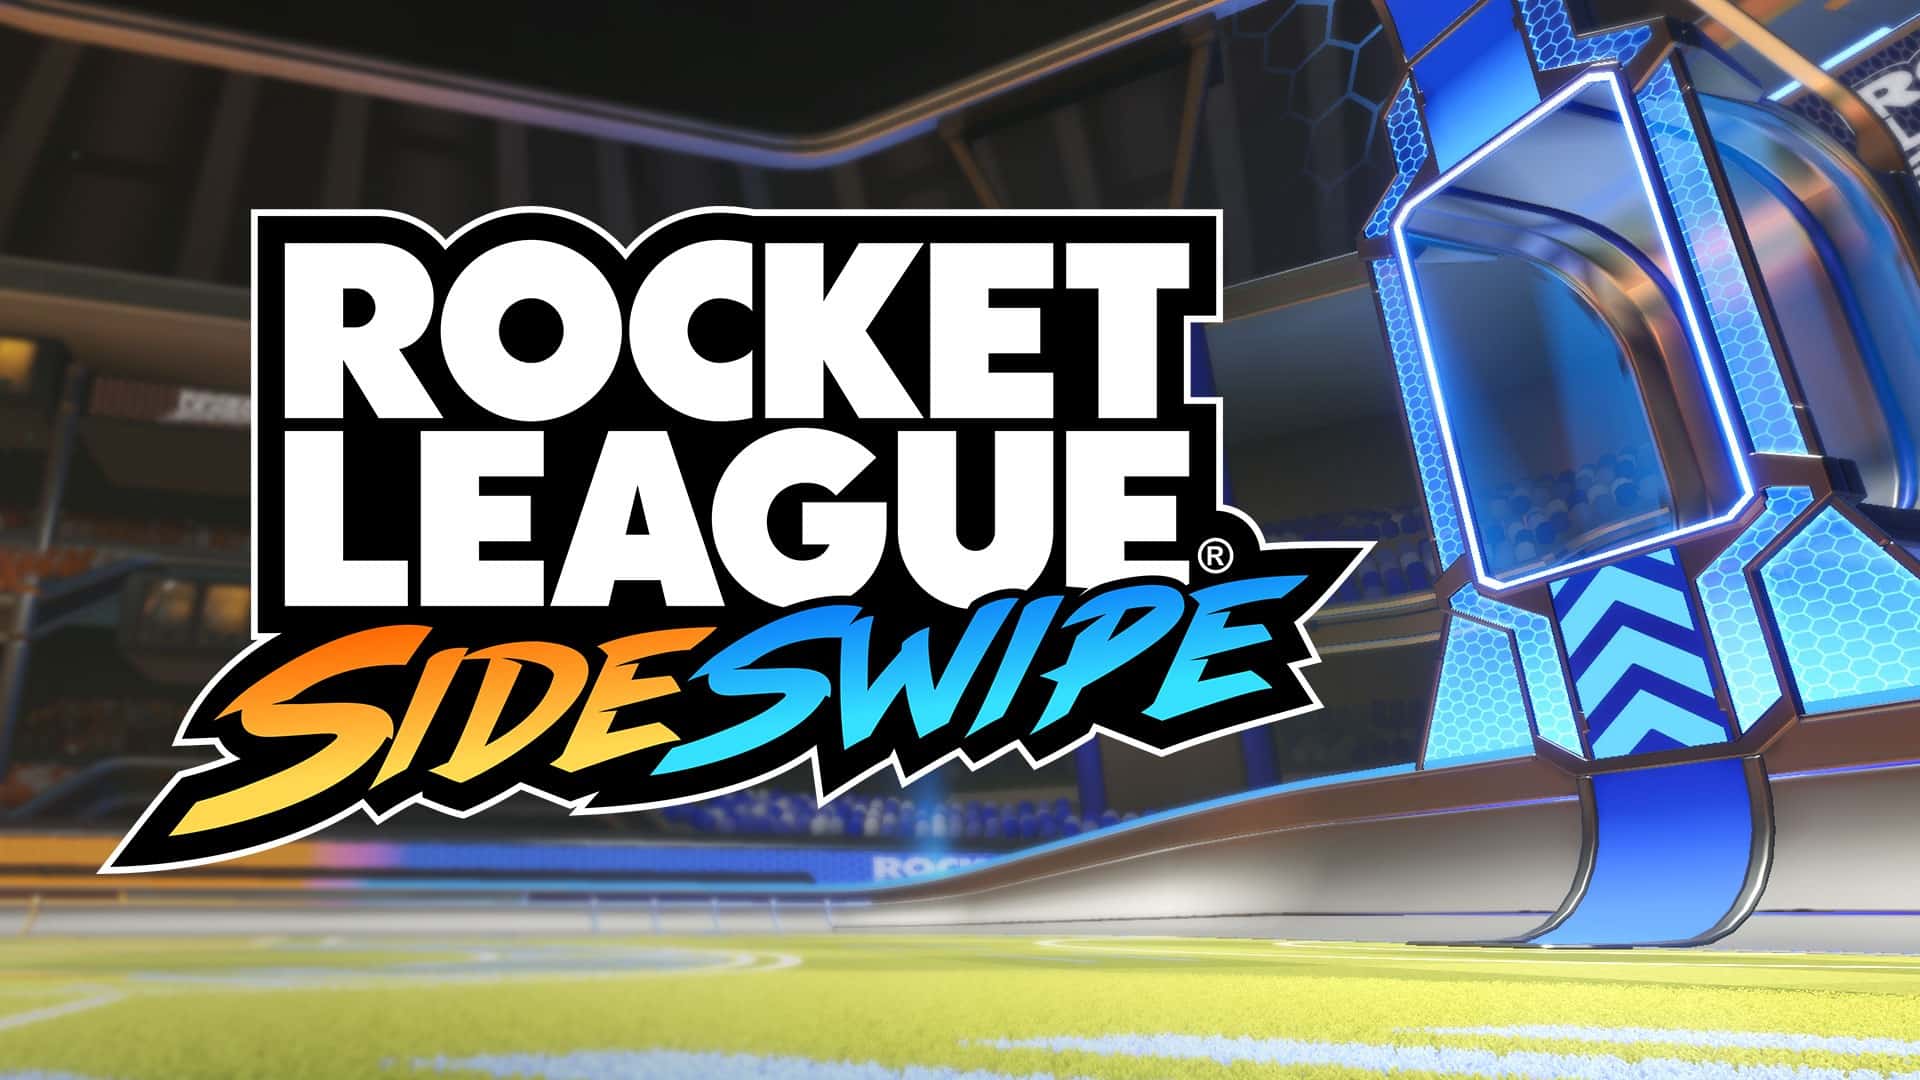 Rocket League Sideswipe - Featured